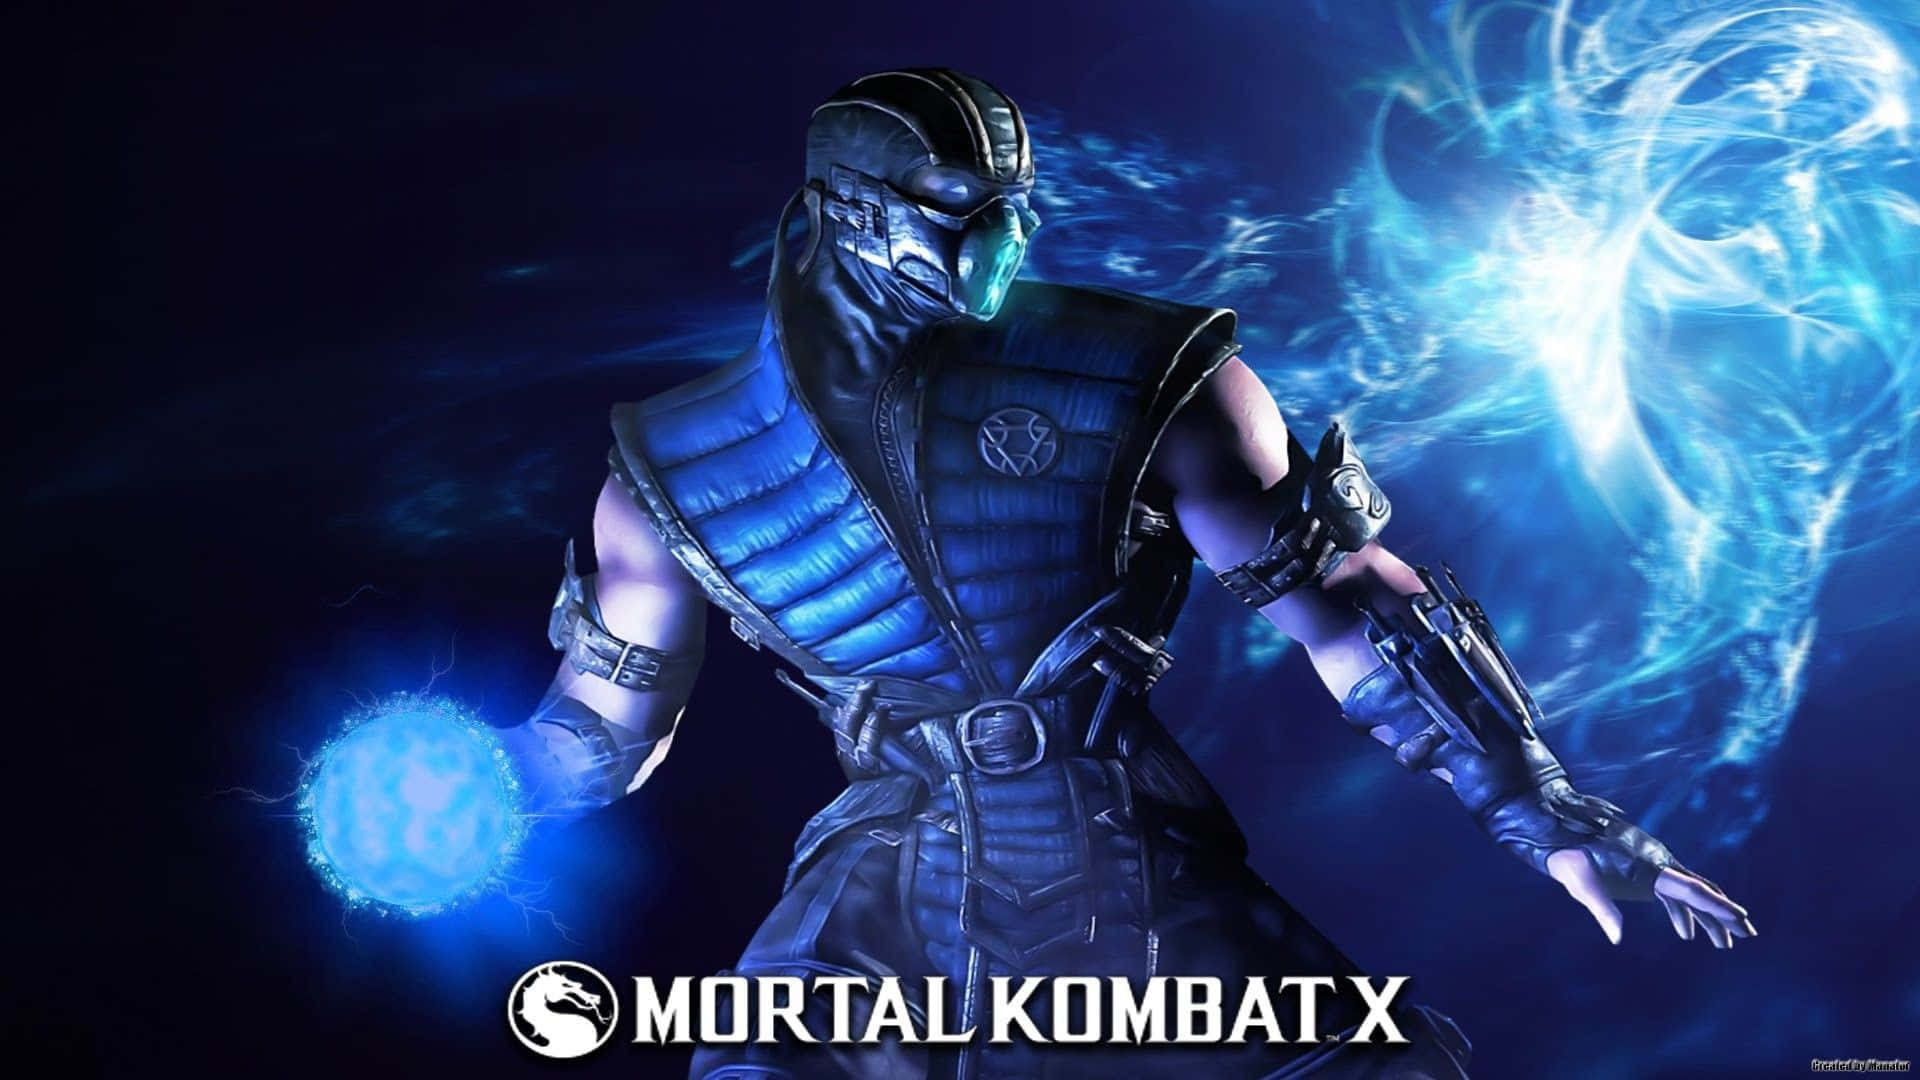 Diecharaktere Der Mortal Kombat-serie Sind Bereit Für Einen Kampf.